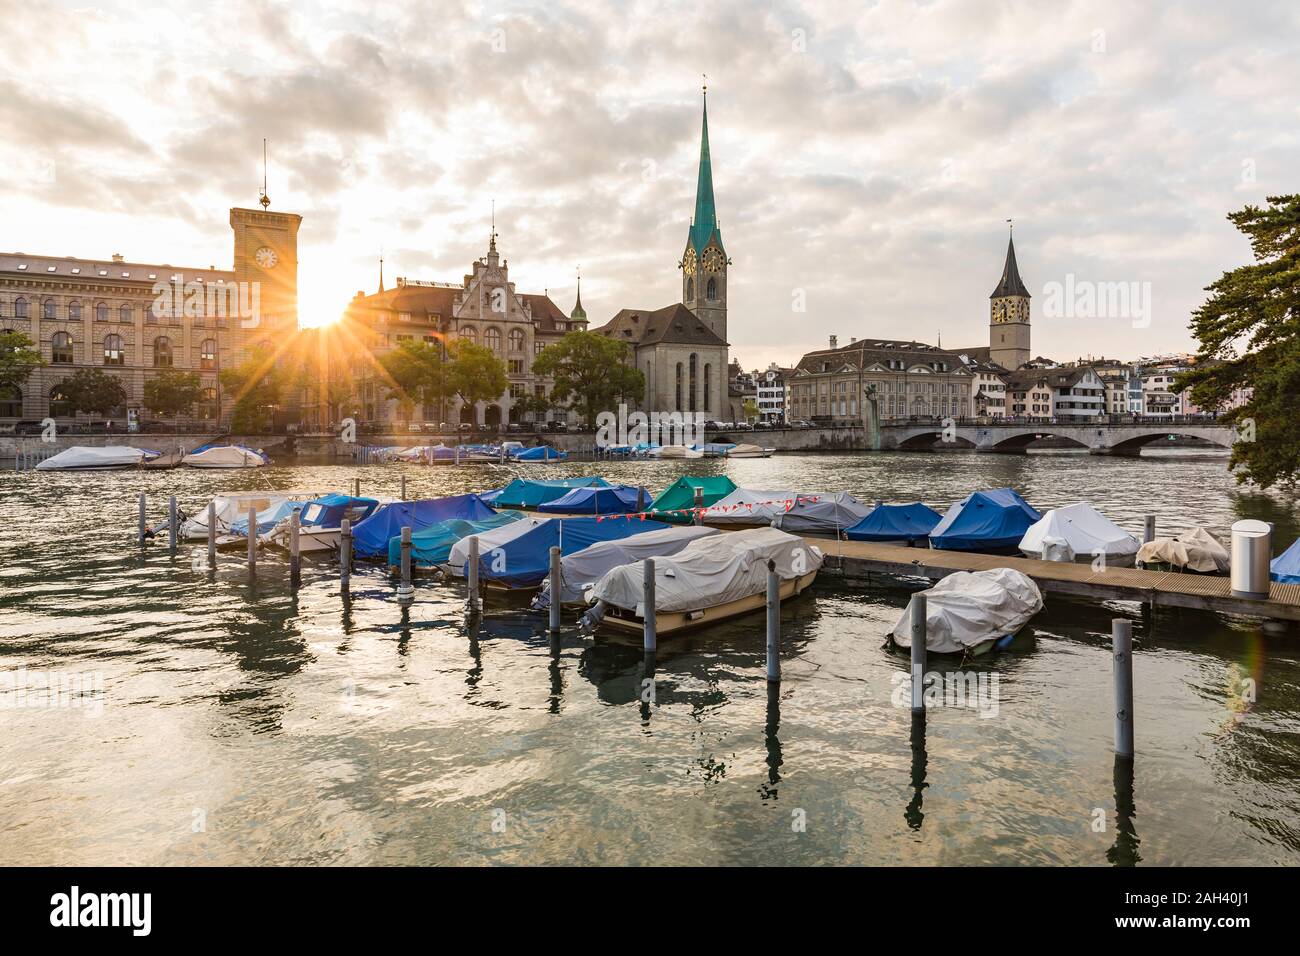 La Svizzera, nel Cantone di Zurigo, Zurigo, coperto barche ormeggiate sul fiume Limmat al tramonto con old town waterfront in background Foto Stock